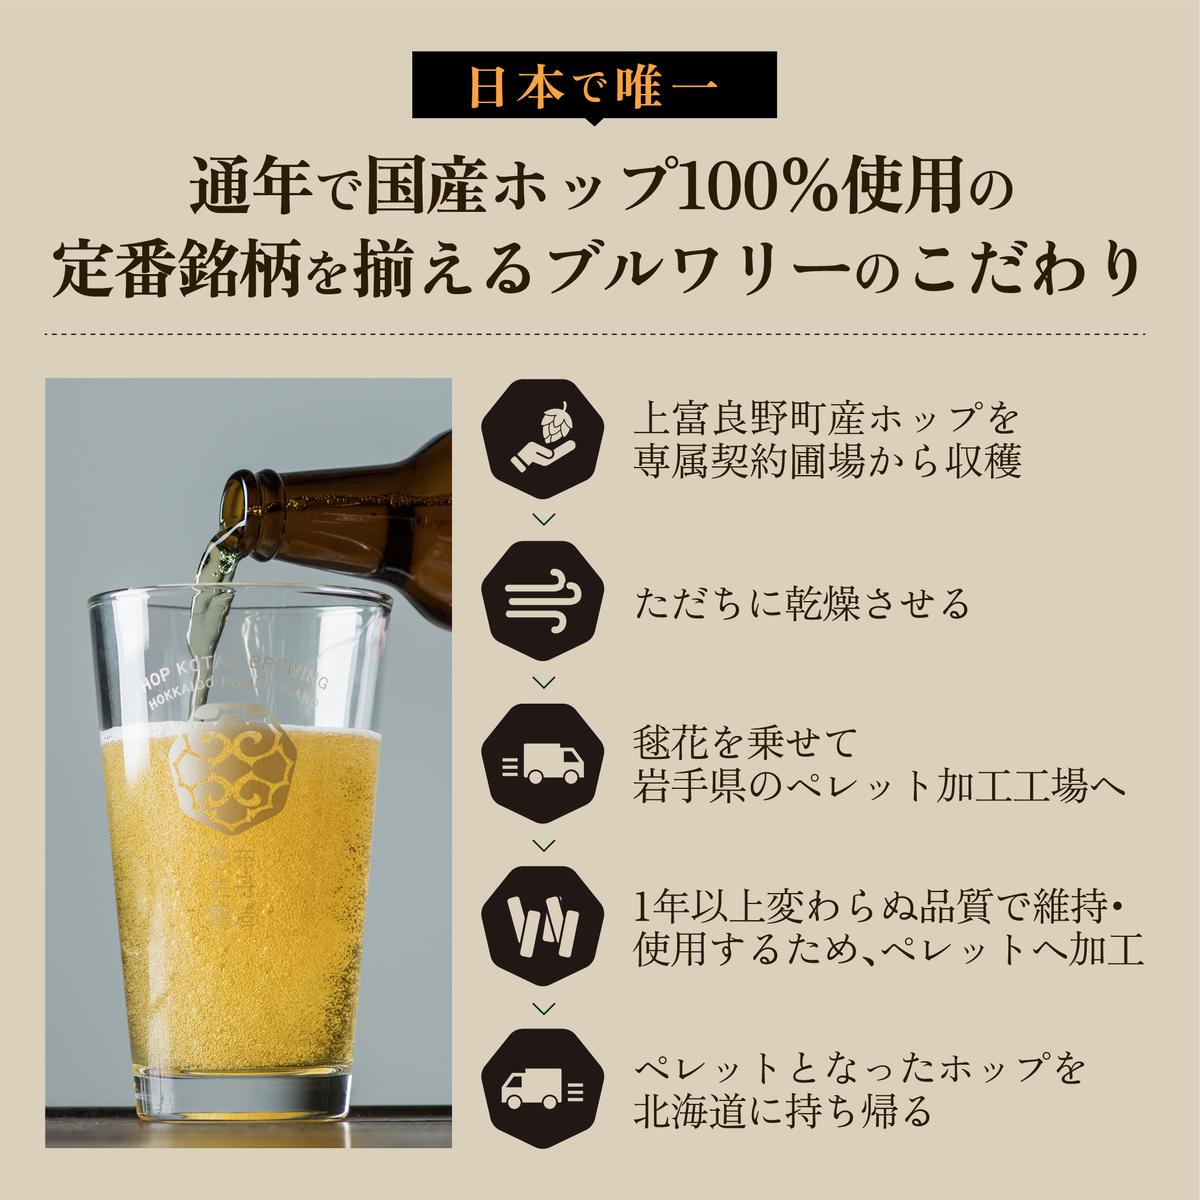 クラフトビール HOP KOTAN ORIGINALS 12本 セット 定番3種各4本 ビール 発泡酒 地ビール お酒 酒 飲み物 北海道